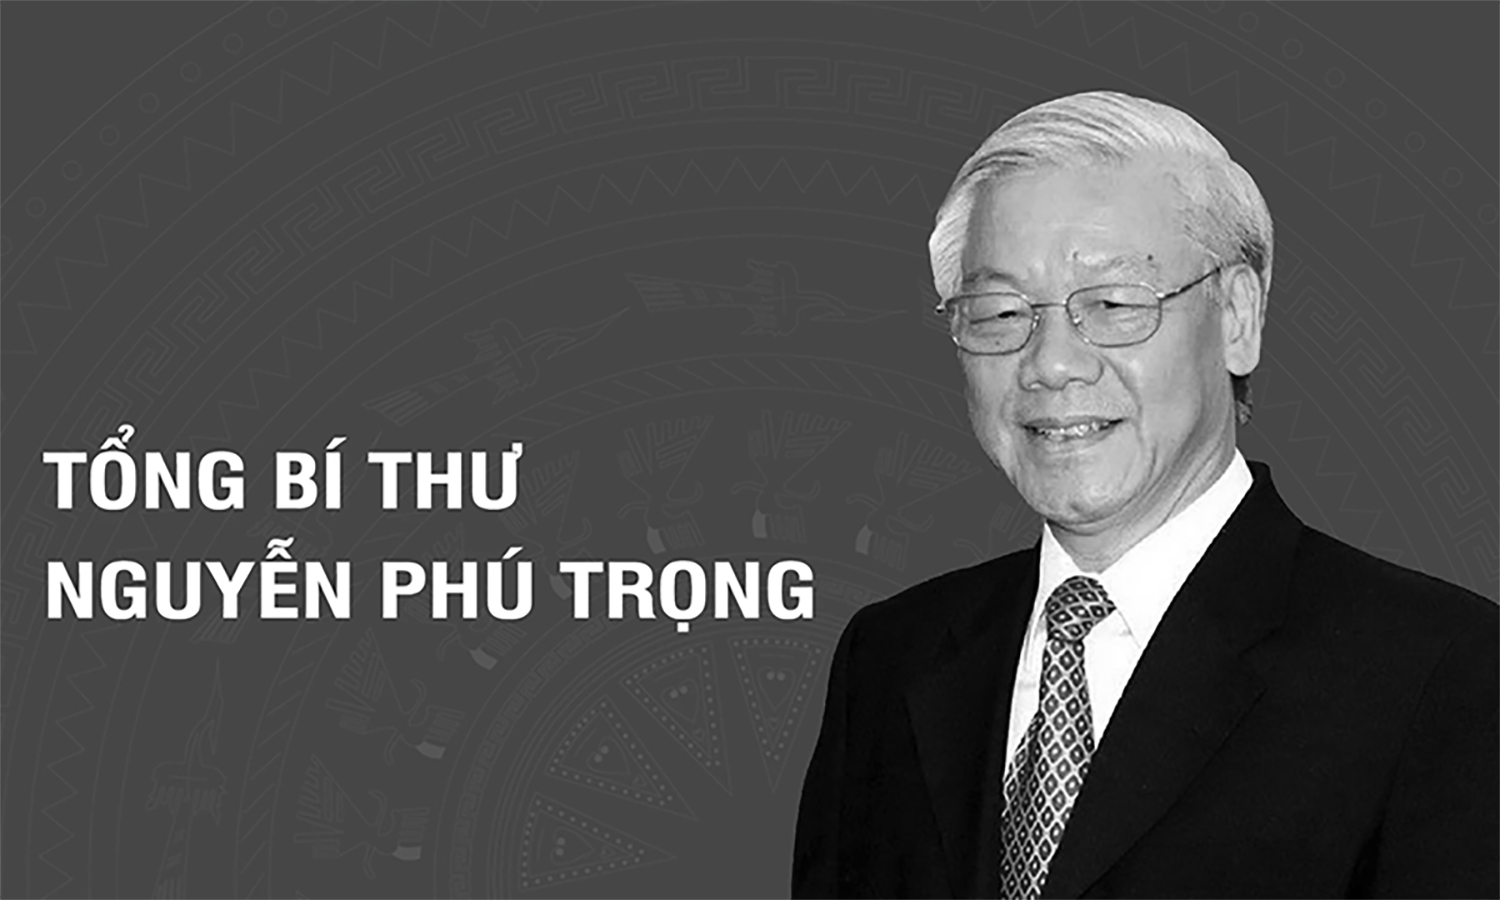 Thông cáo đặc biệt về Quốc tang Tổng Bí thư Nguyễn Phú Trọng